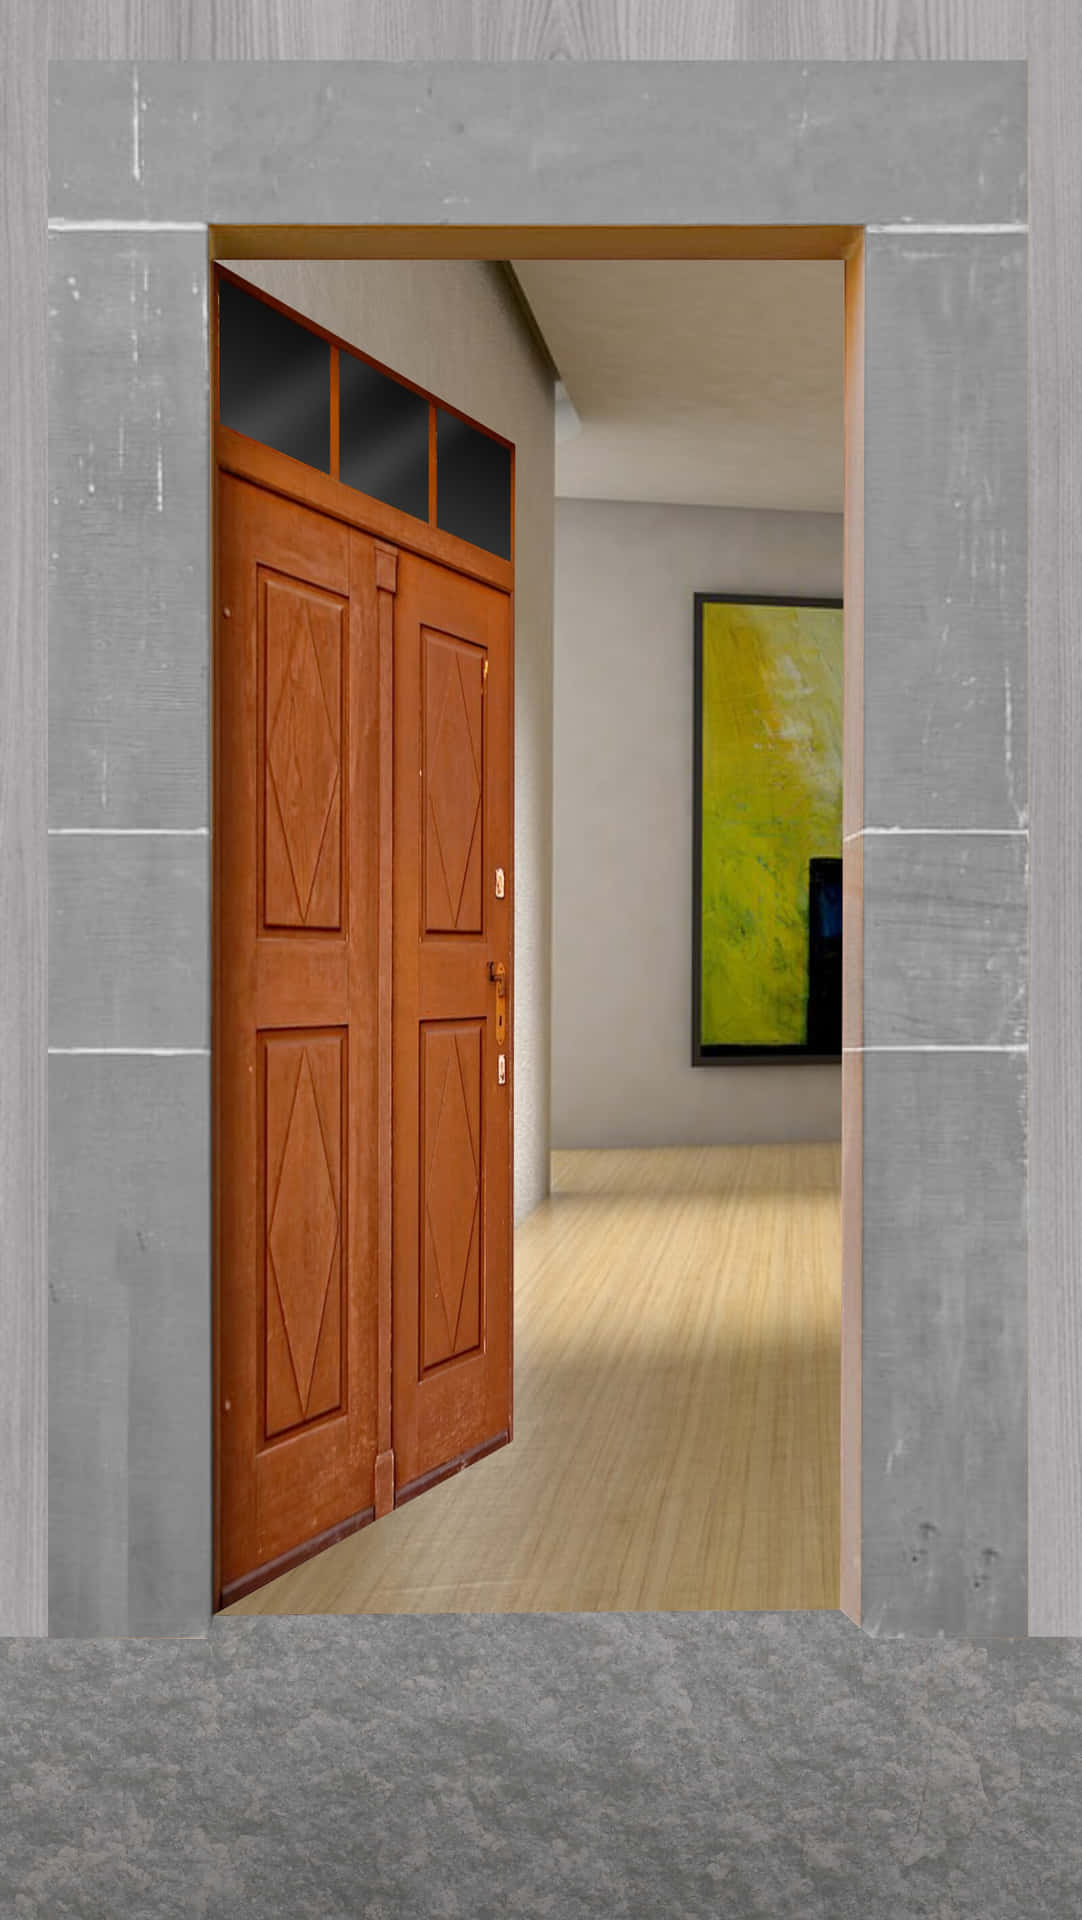 A Doorway In A Room